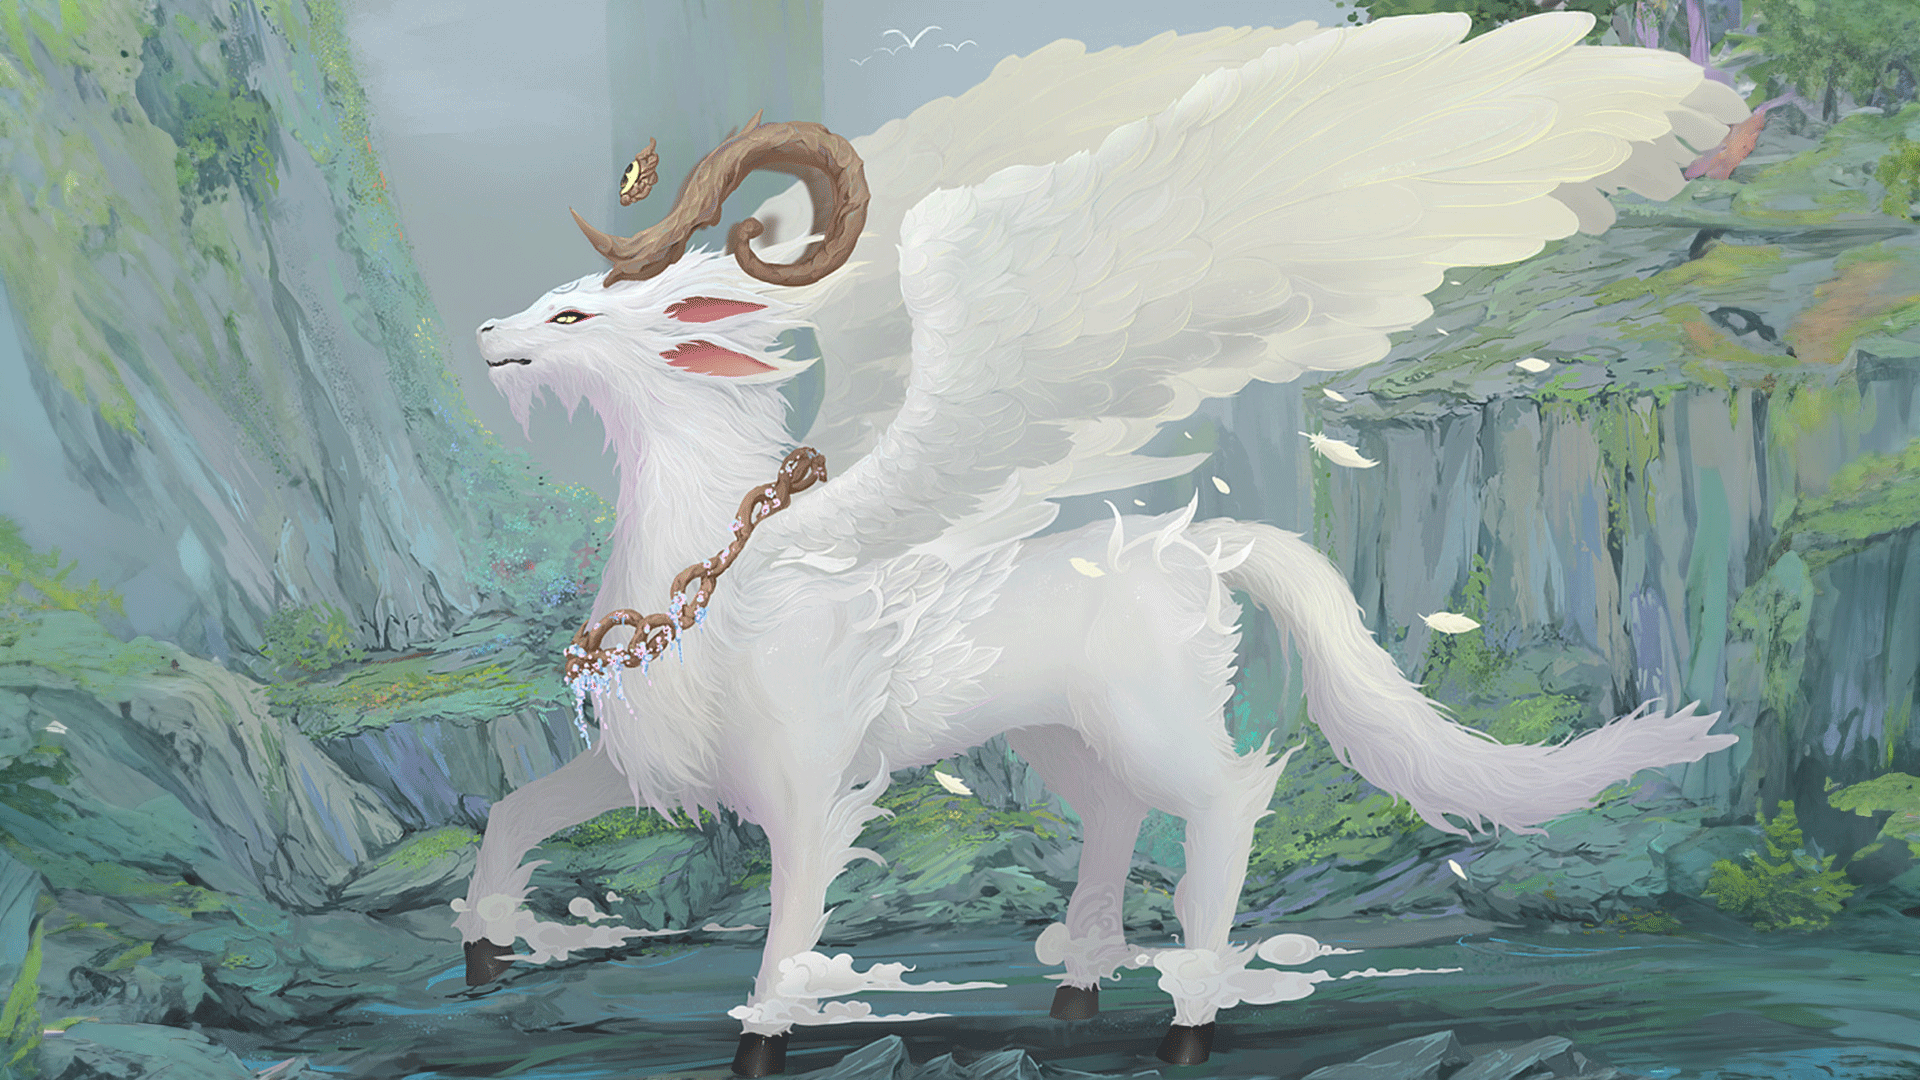 山海经异兽:白泽,被视为吉祥和神秘的神兽